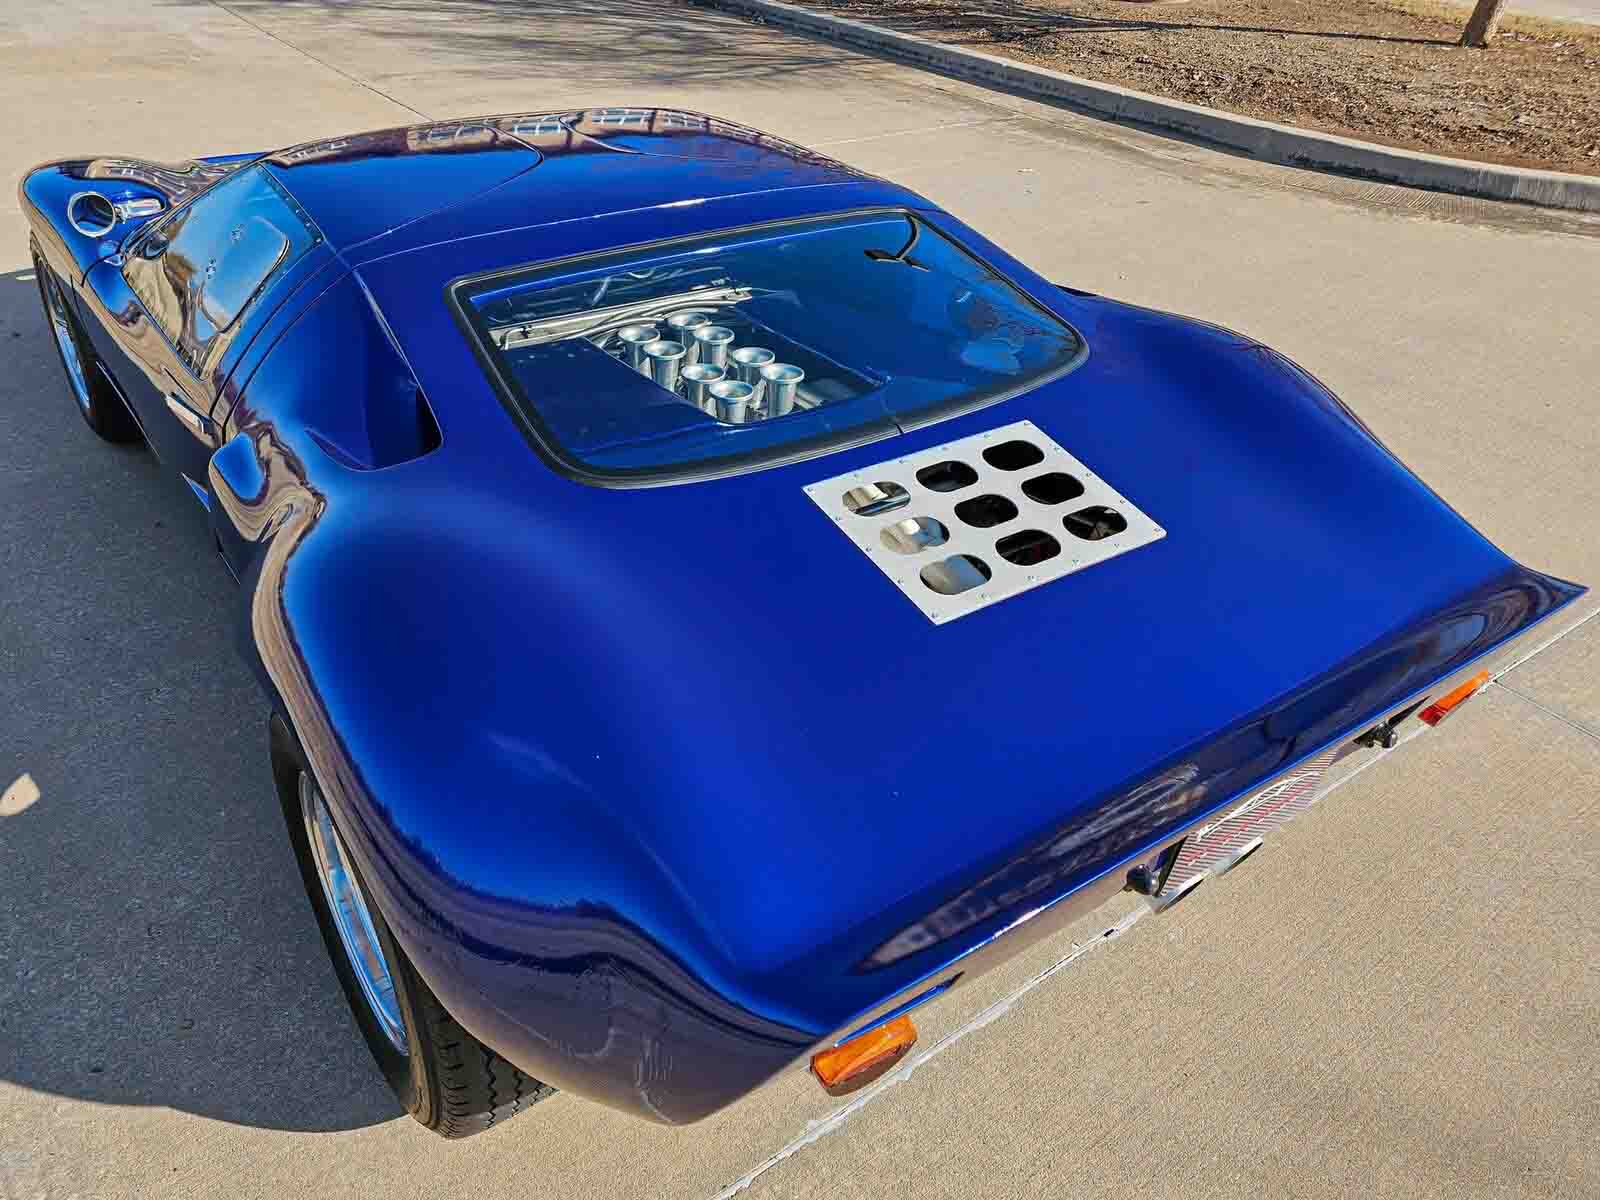 Ford-v-Ferrari-GT40